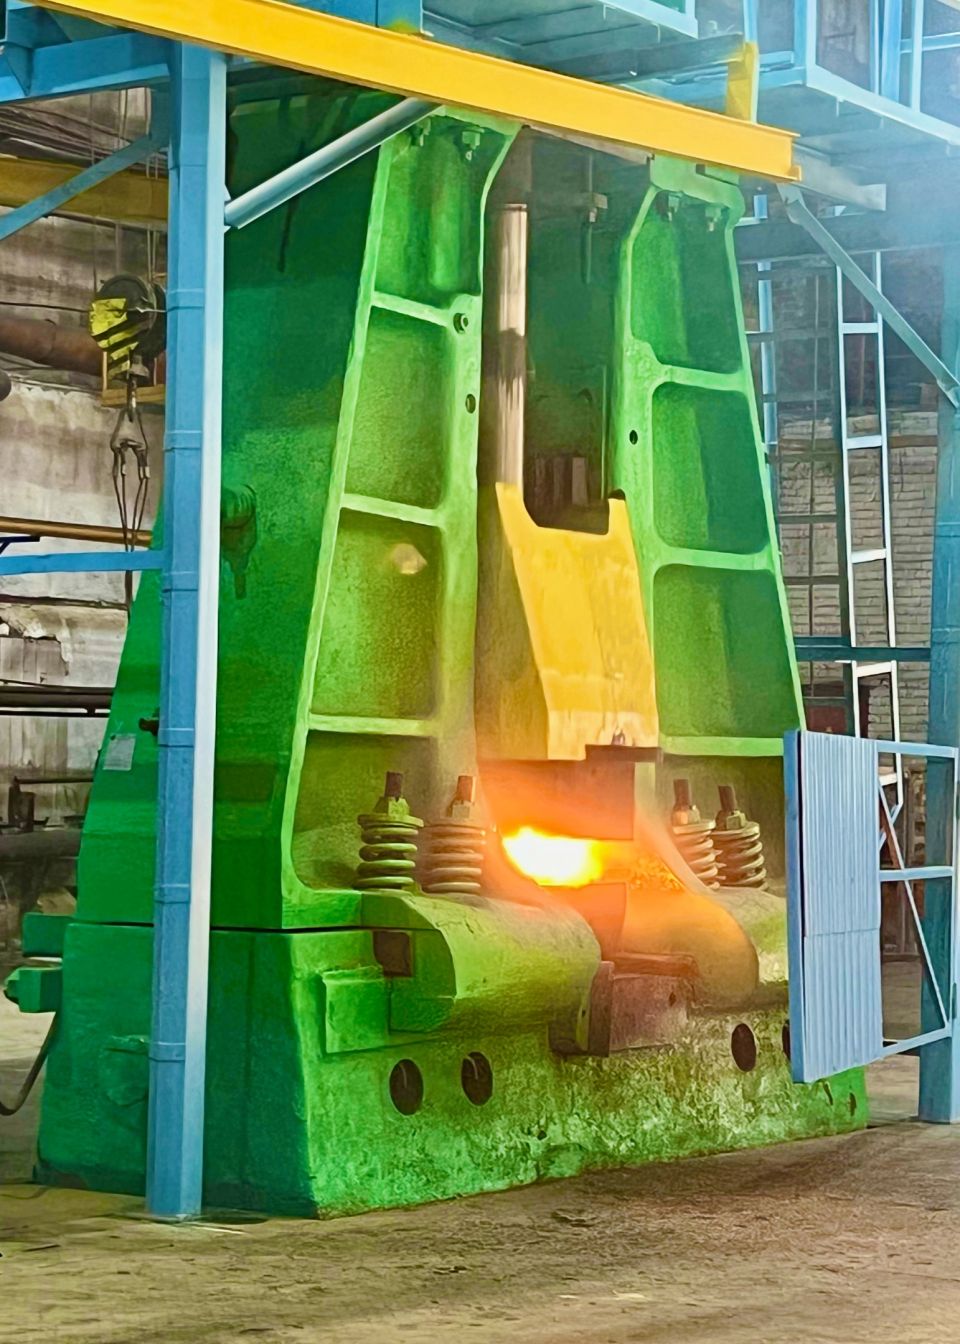 Новый штамповочный молот запущен в работу в кузнечном цехе Барнаульского завода мехпрессов